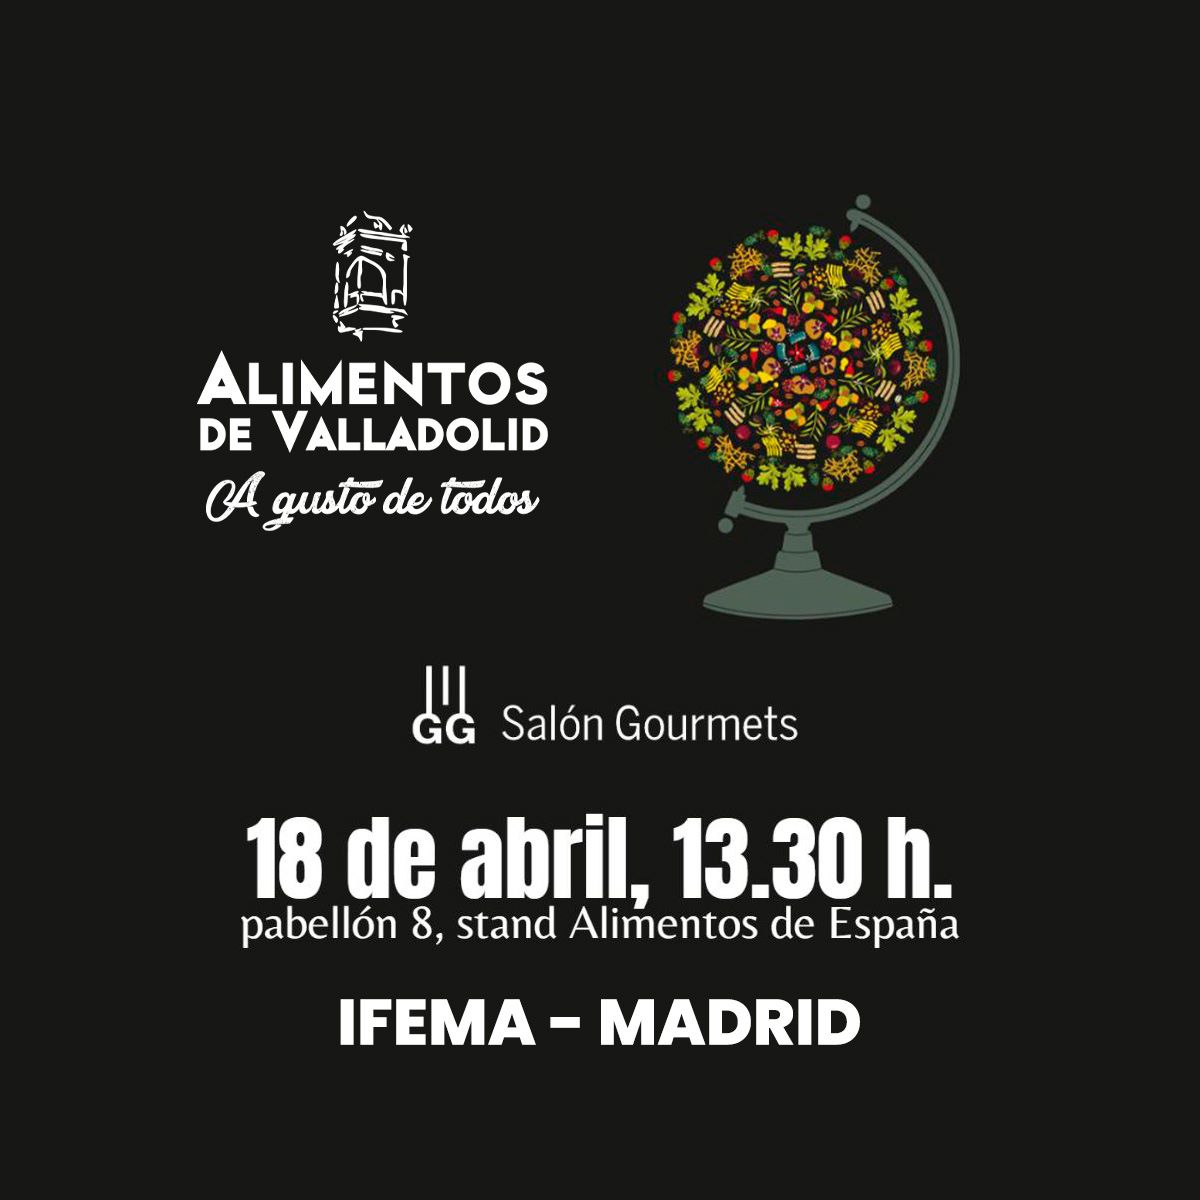 Alimentos de Valladolid estará presente en la 36 edición de #SalónGourmets con varias marcas adheridas. 

📅 Del 17 al 20 de abril de 2023

📍@IFEMA, #Madrid 

@Dip_Va @GrupoGourmets  #AlimentosdeValladolid
#IFEMA #36SalónGourmets